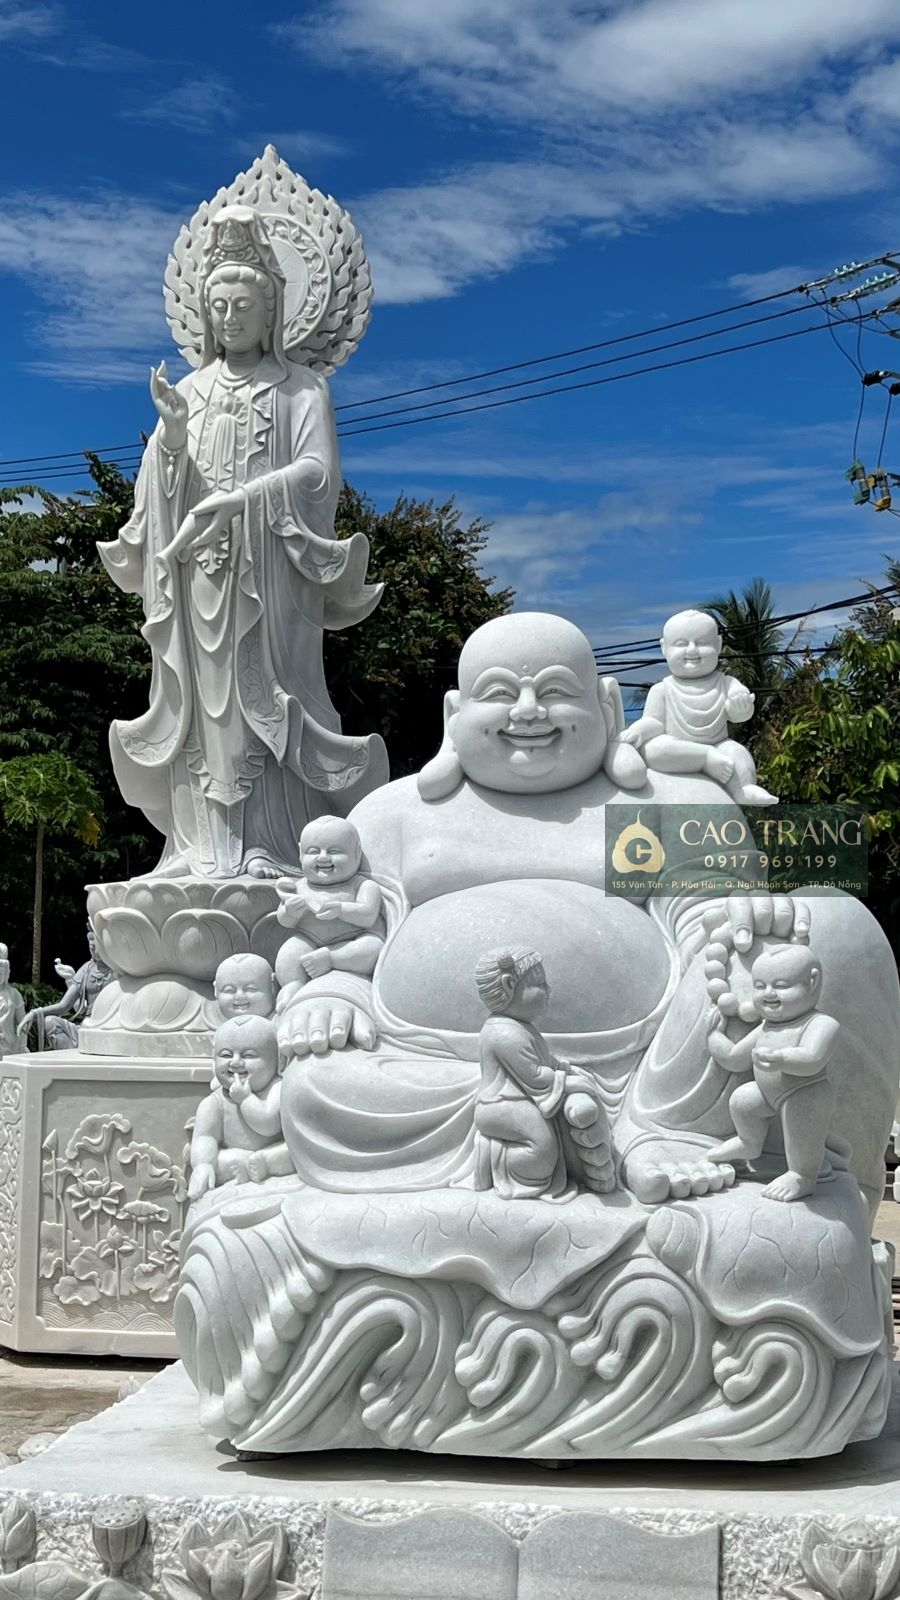 Các loại tượng Phật bằng đá tại Bình Định do Cao Trang cung cấp